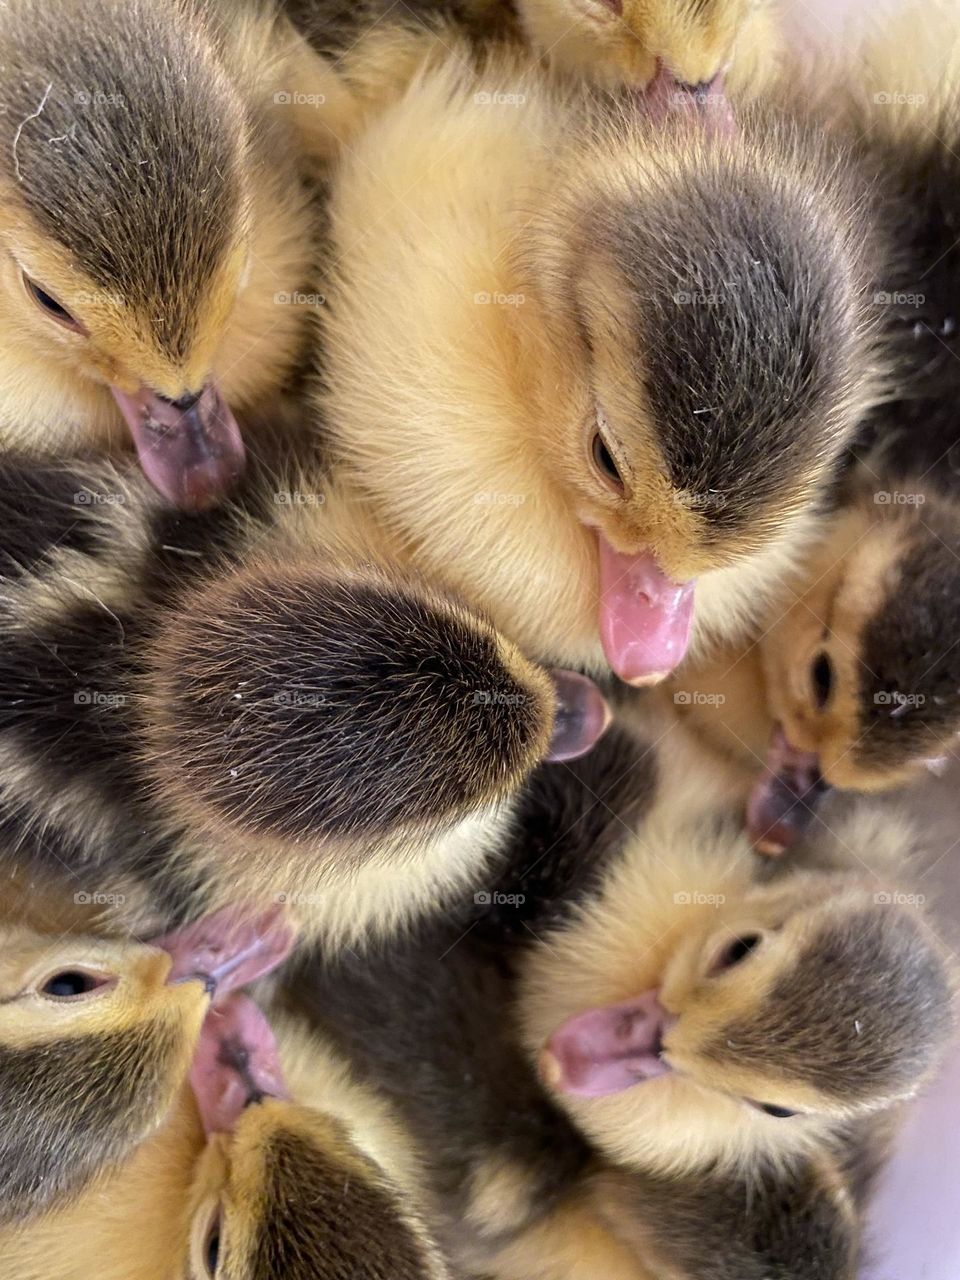 Little ducklings 